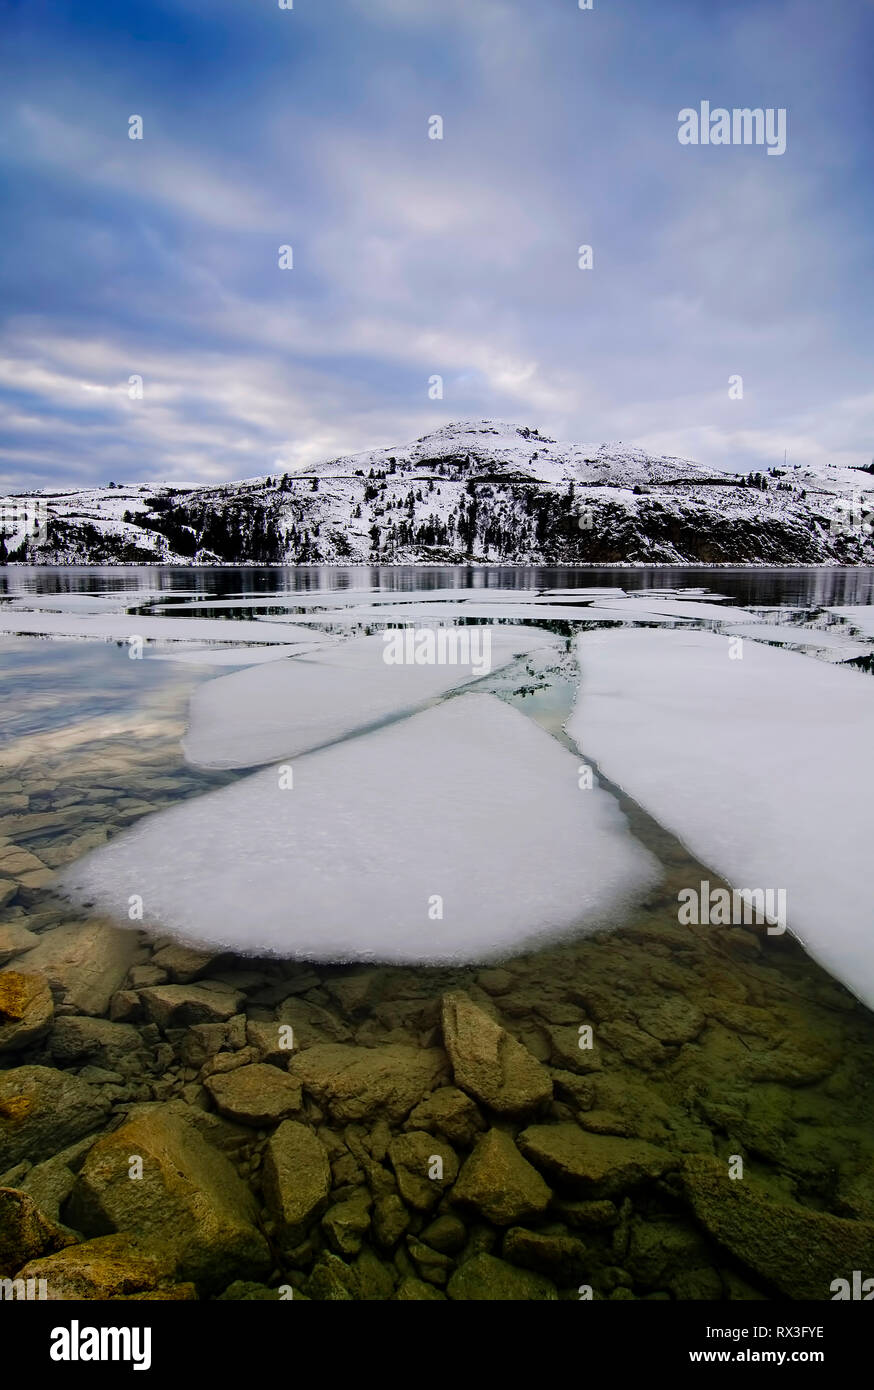 Trozos de hielo sobre el lago Kalamalka romper, cerca de Vernon, British Columbia, Canadá Foto de stock